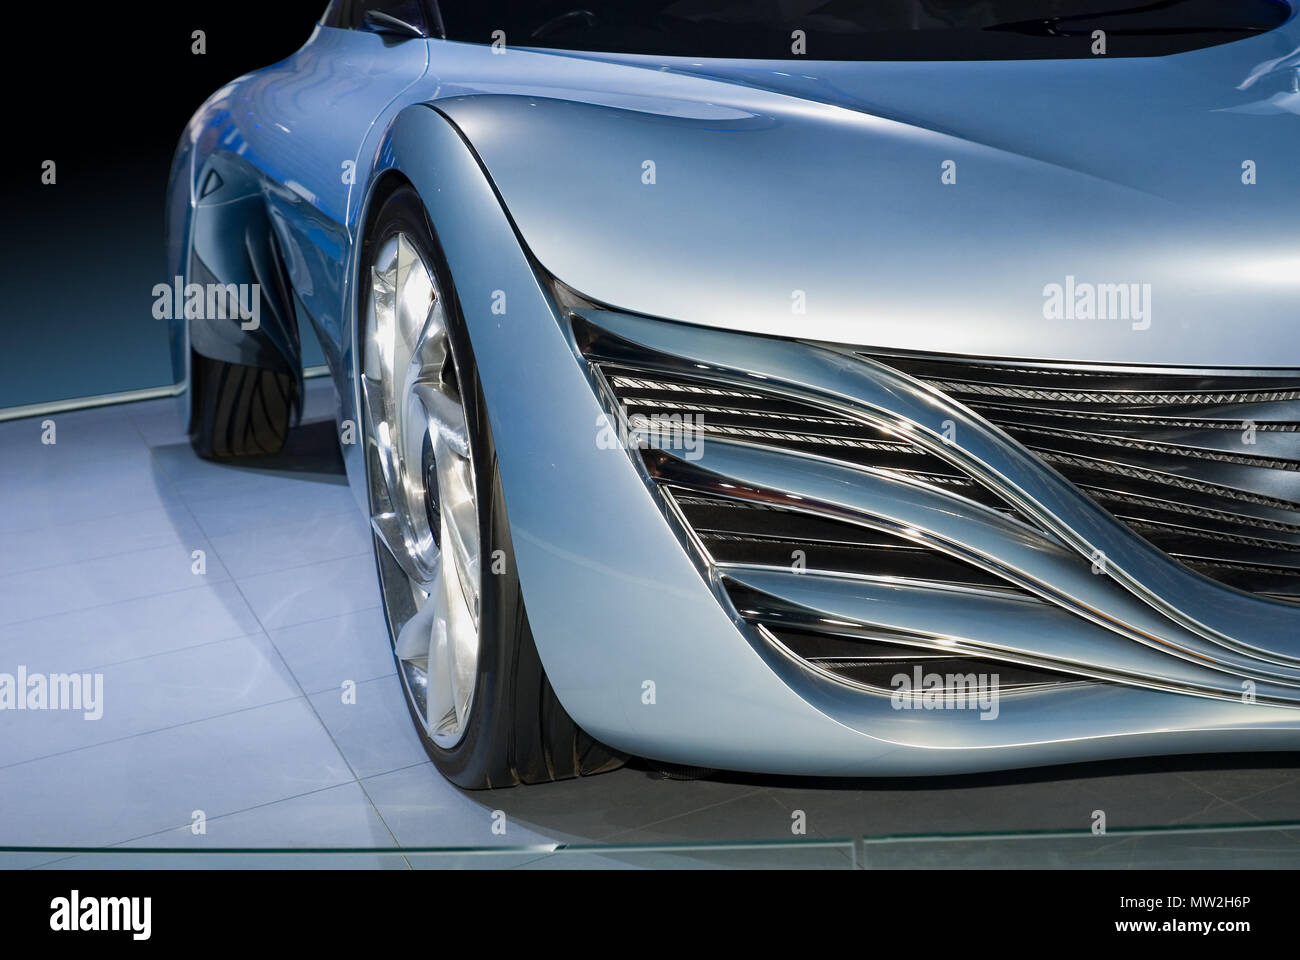 Belles lignes fluides soulignent le design de ce concept-car futuriste. Étant donné une teinte bleue pour un effet abstrait. Banque D'Images